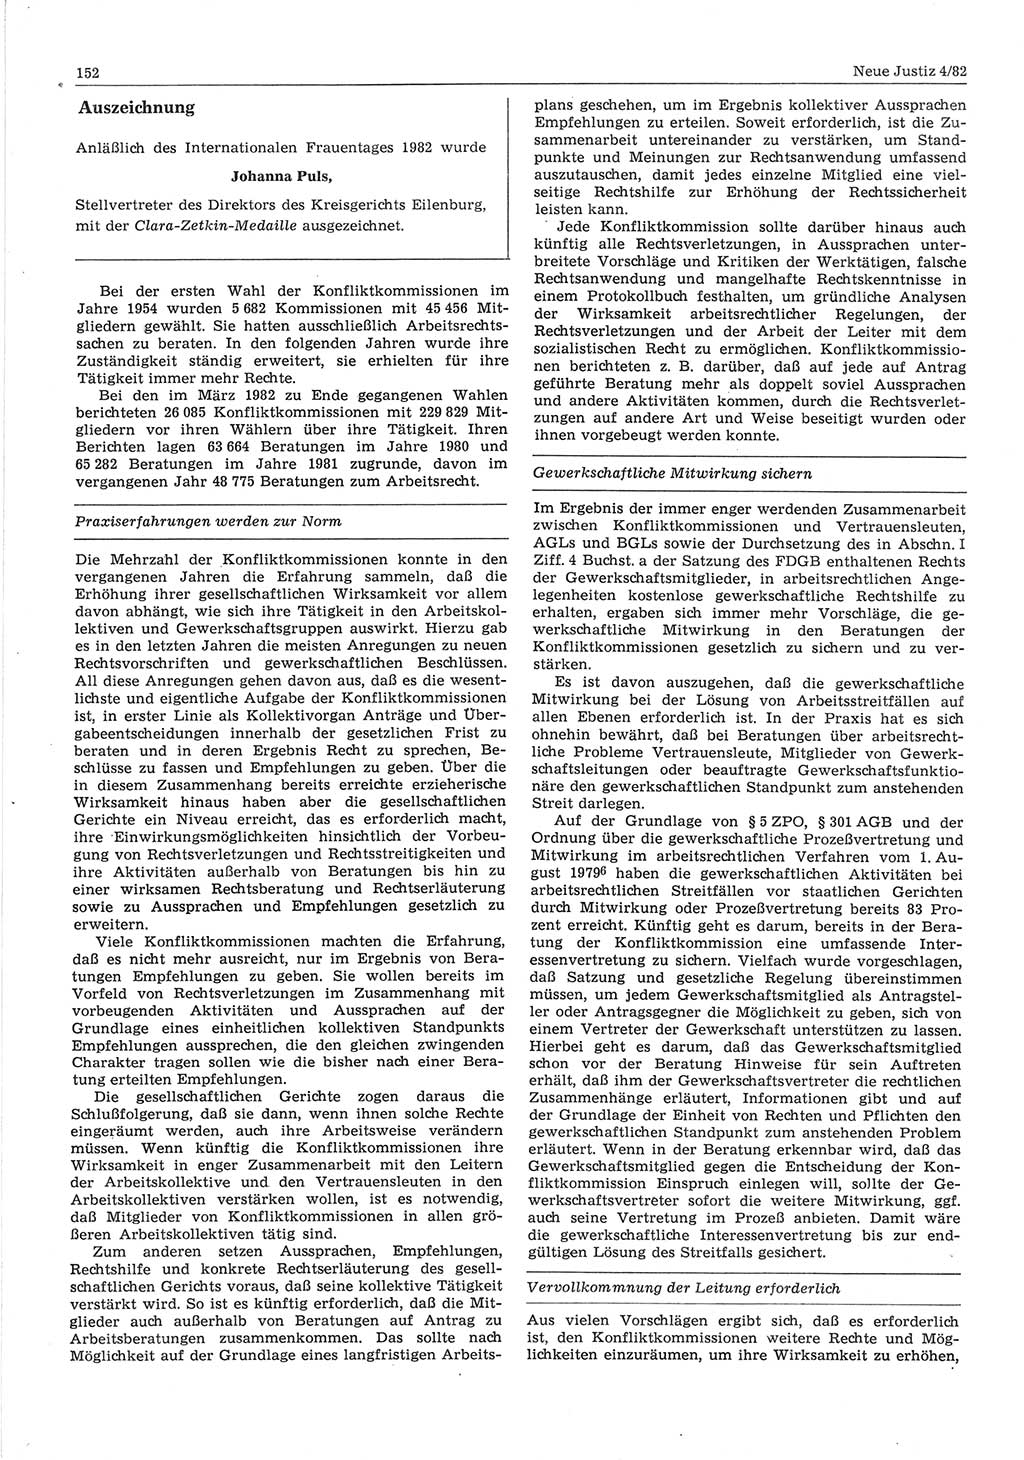 Neue Justiz (NJ), Zeitschrift für sozialistisches Recht und Gesetzlichkeit [Deutsche Demokratische Republik (DDR)], 36. Jahrgang 1982, Seite 152 (NJ DDR 1982, S. 152)